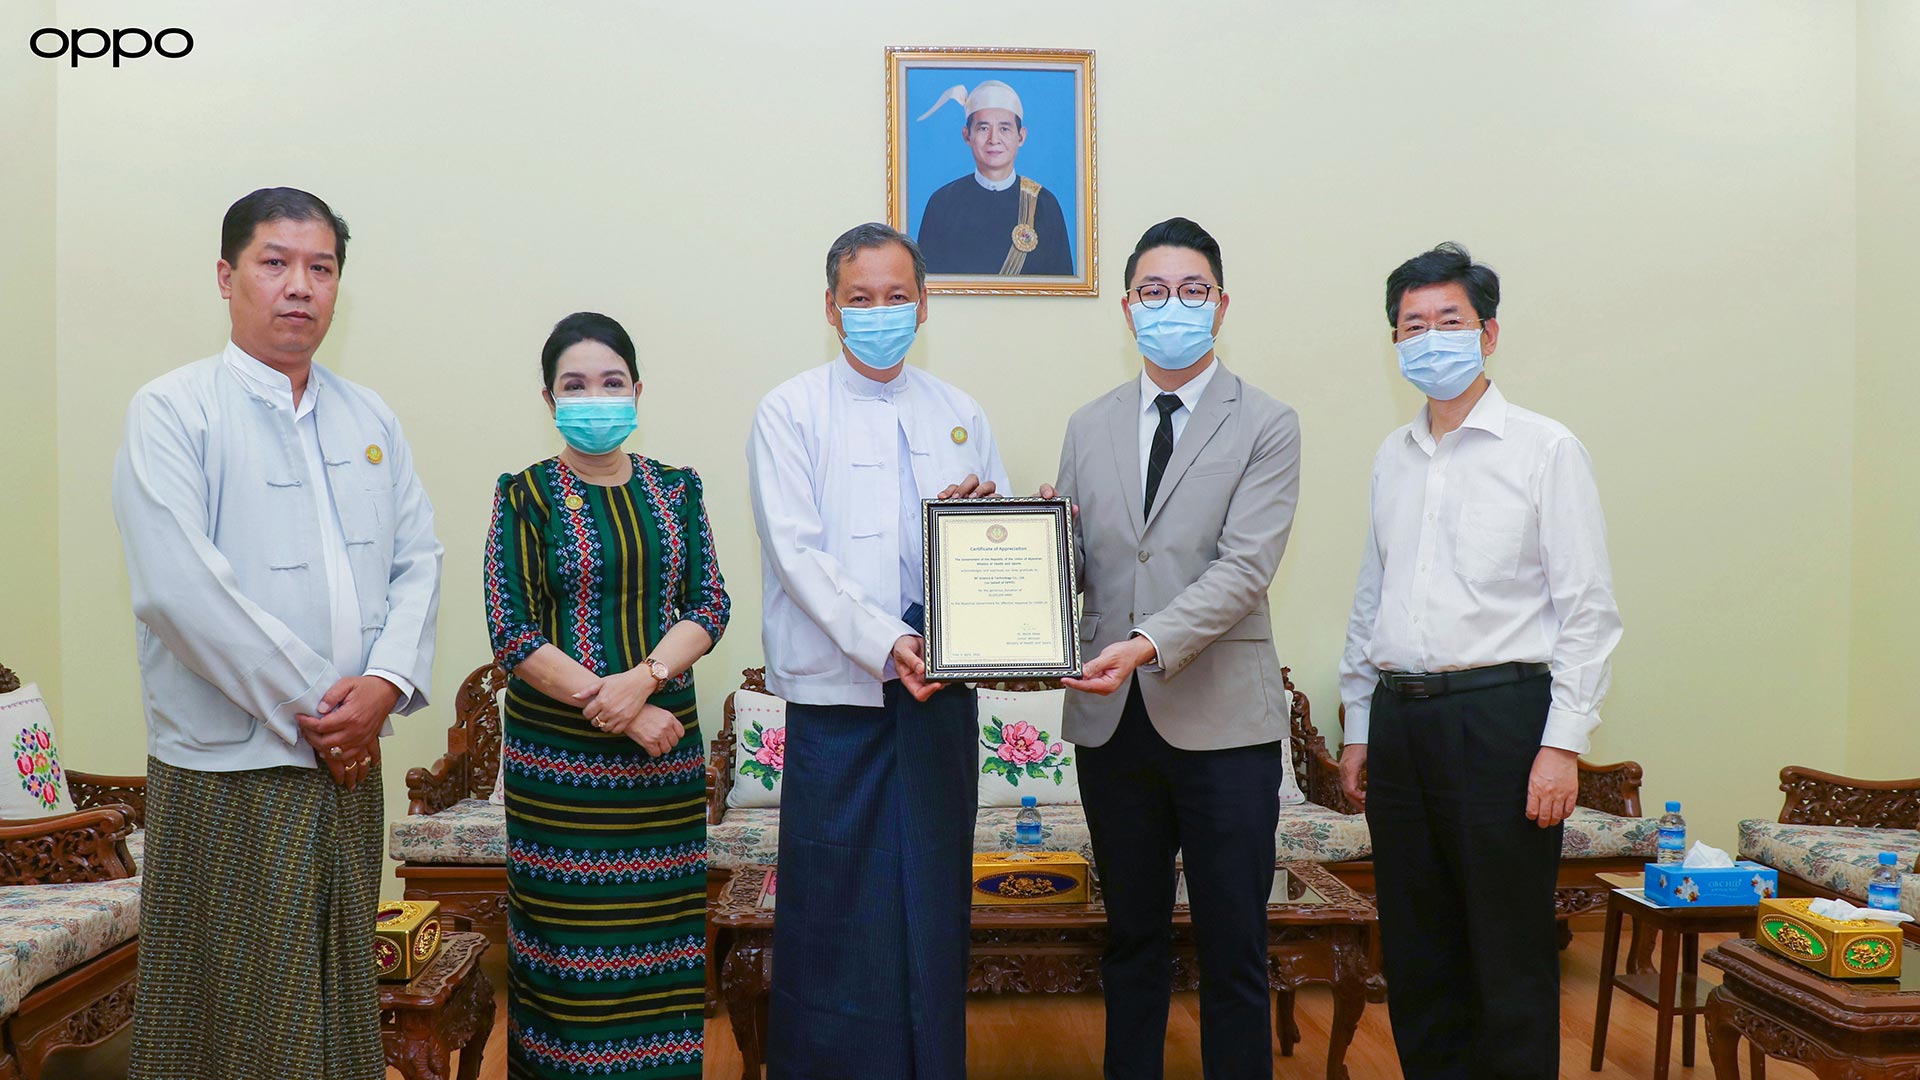 OPPO မှ  COVID-19 ရောဂါ ကာကွယ်‌ရေးနှင့် ကုသရေး လုပ်ငန်းစဉ်များအတွက် မြန်မာနိုင်ငံ ကျန်းမာရေးနှင့် အားကစားဝန်ကြီးဌာနသို့ ကျပ်သိန်း ၂၀၀ လှူဒါန်း